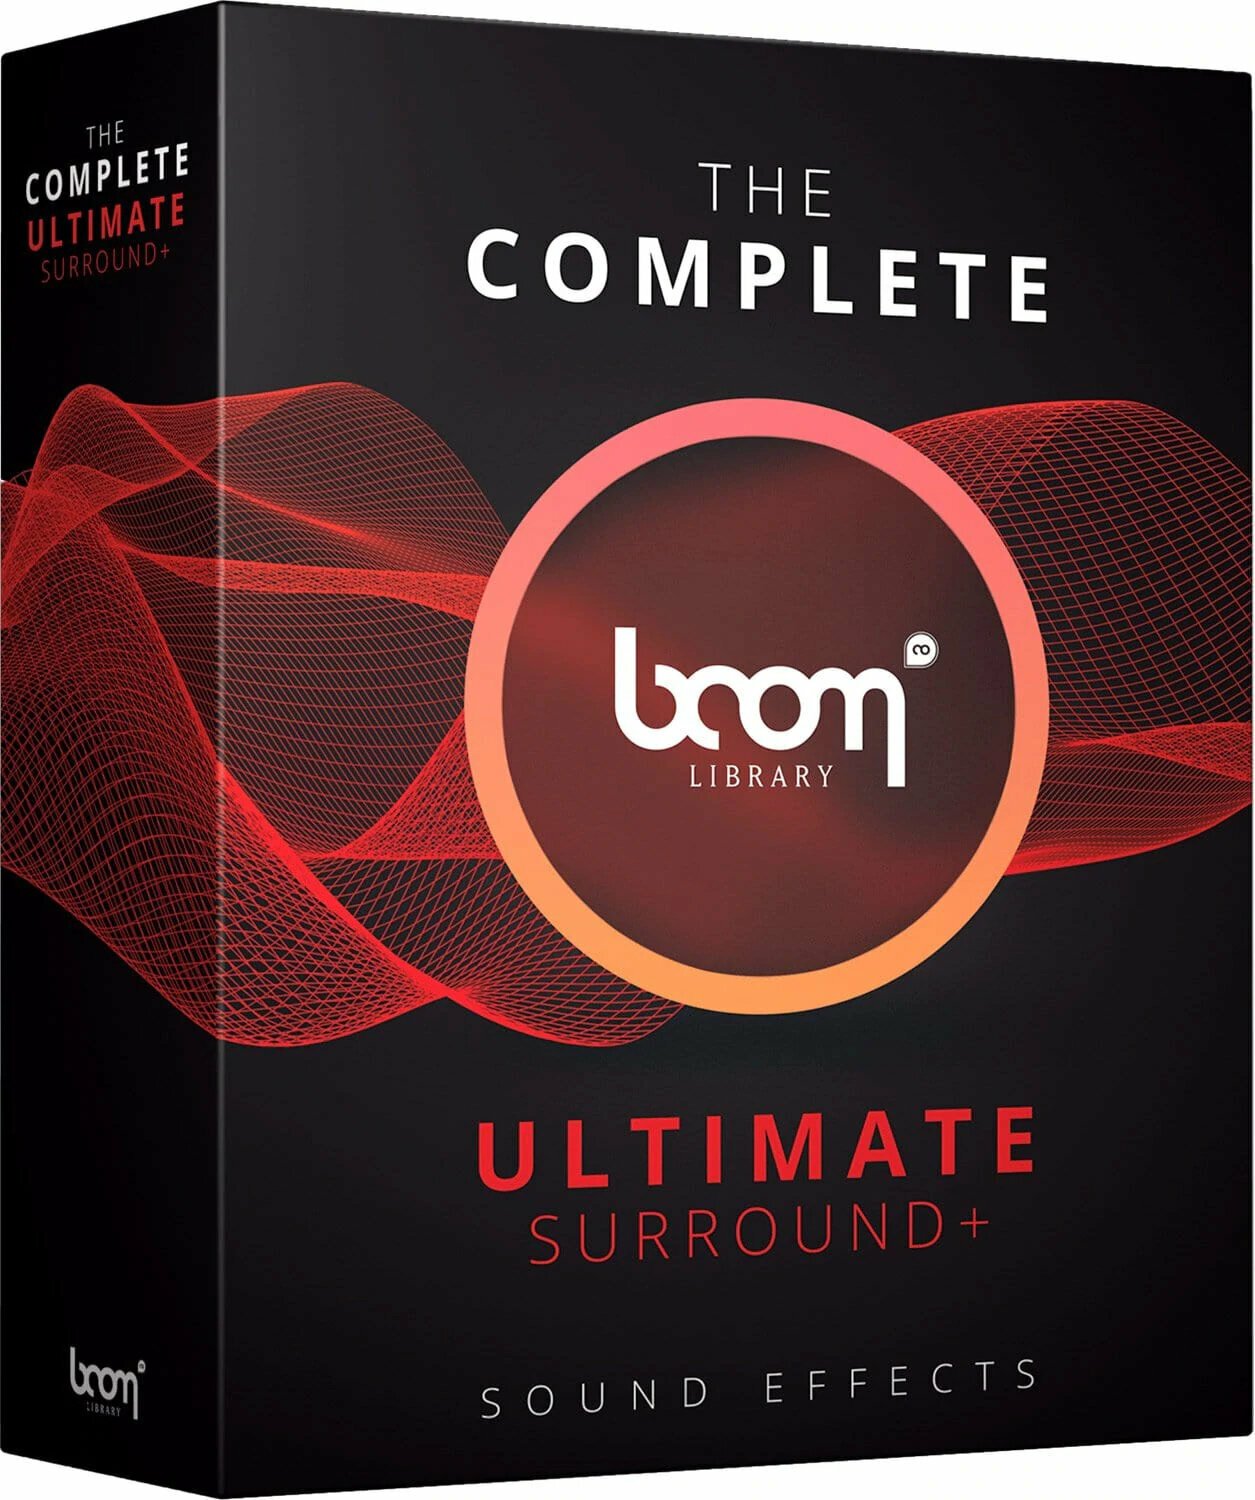 Βιβλιοθήκη ήχου για sampler BOOM Library The Complete BOOM Ultimate Surround (Ψηφιακό προϊόν)